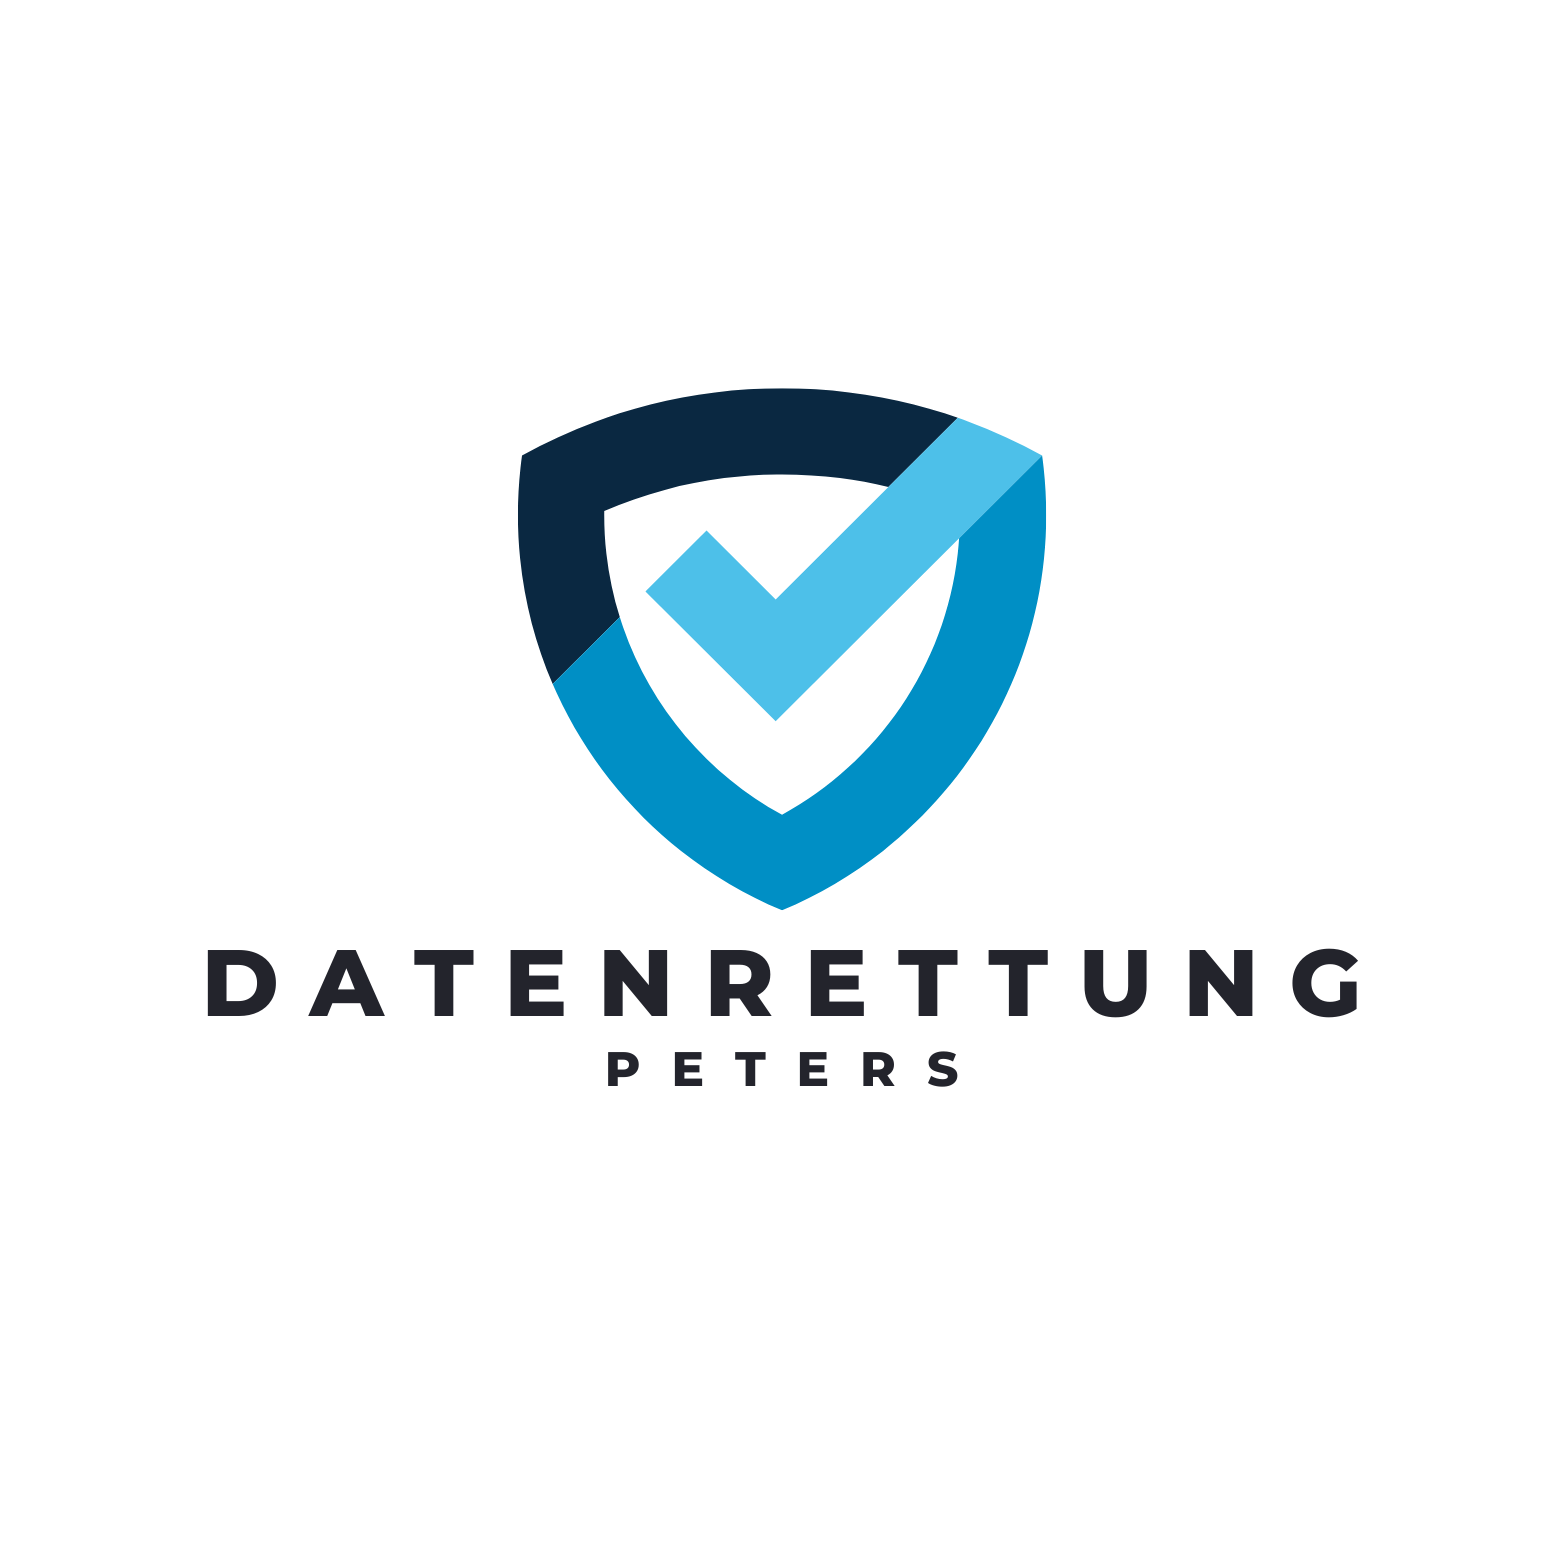 (c) Datenrettung-peters.de